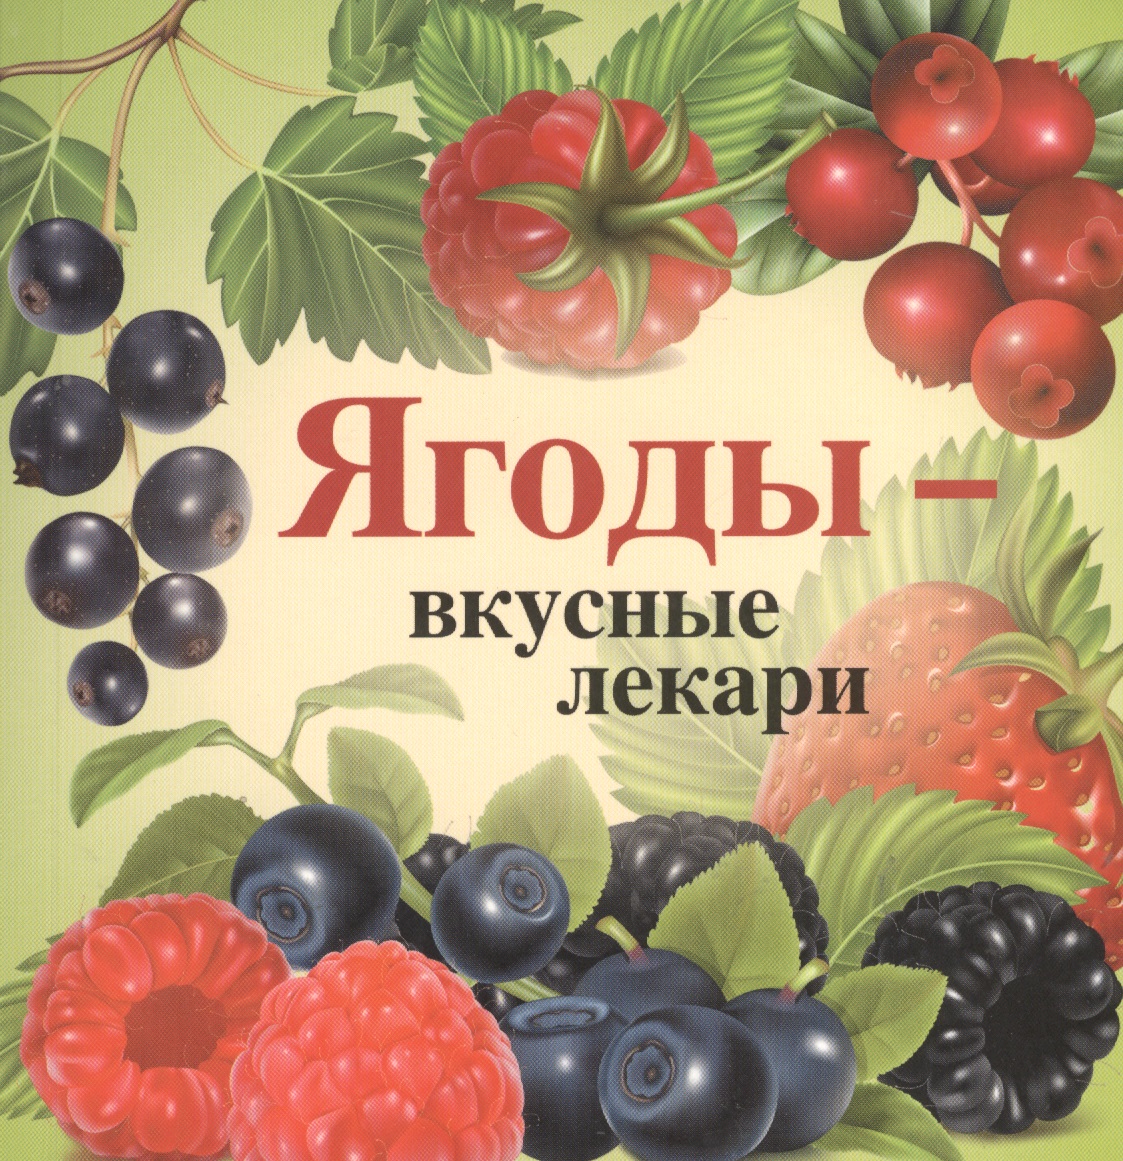 Книги про ягоды для детей